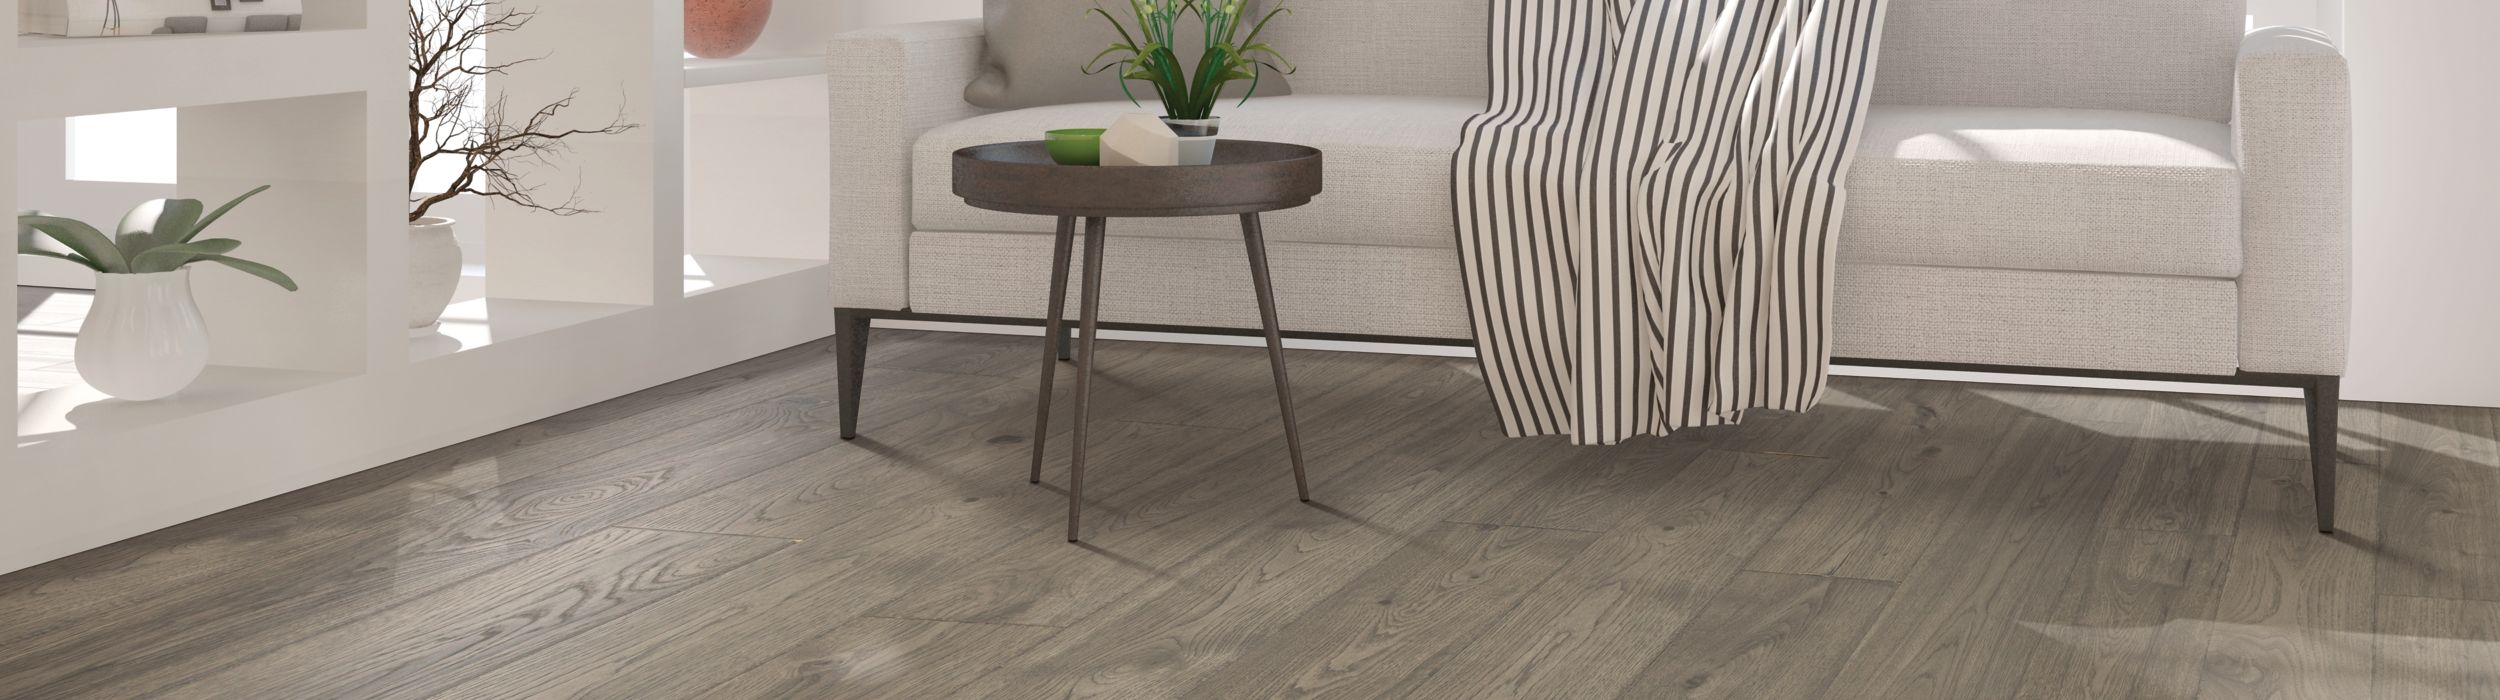 warm grey LVP floors in modern living room